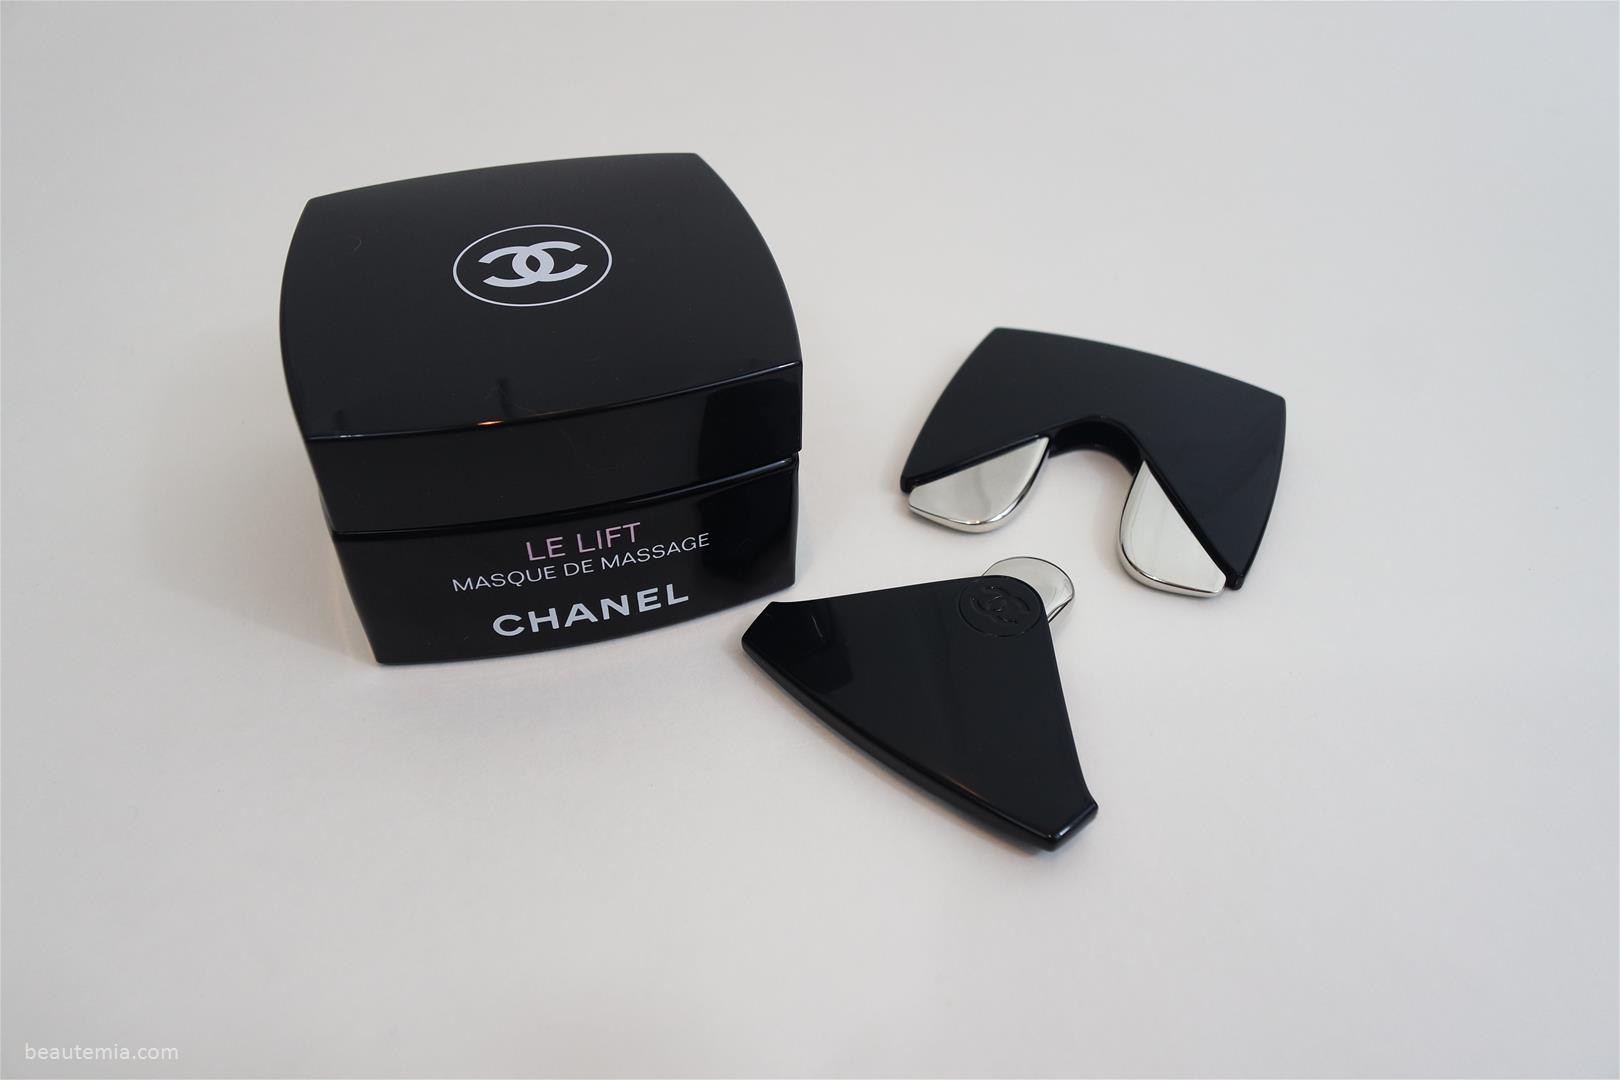 Chanel Review > Le Lift Masque de Massage (Recontouring Massage